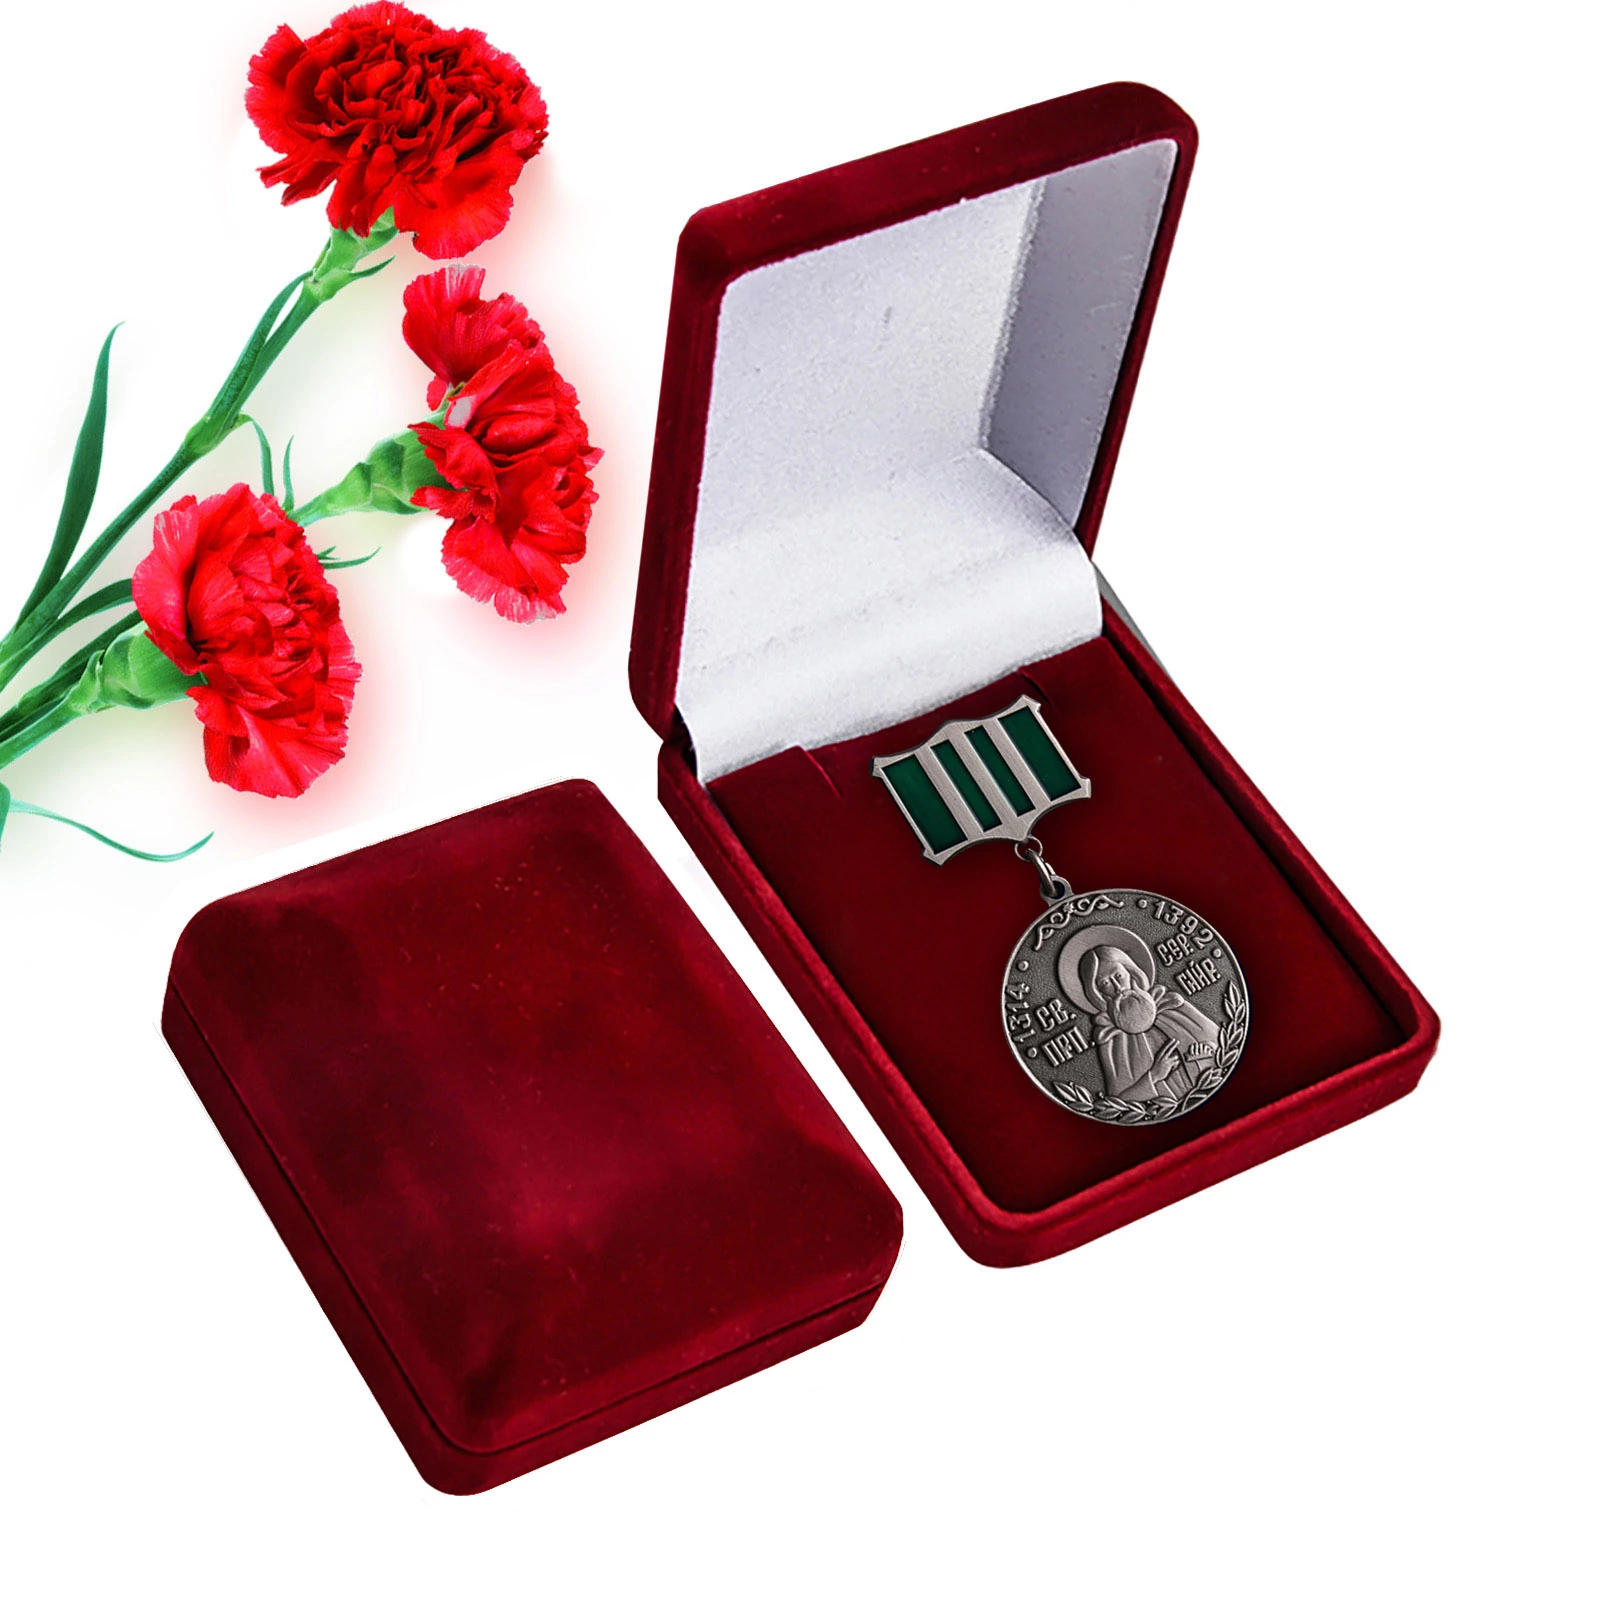 Медаль Святого Сергия Радонежского